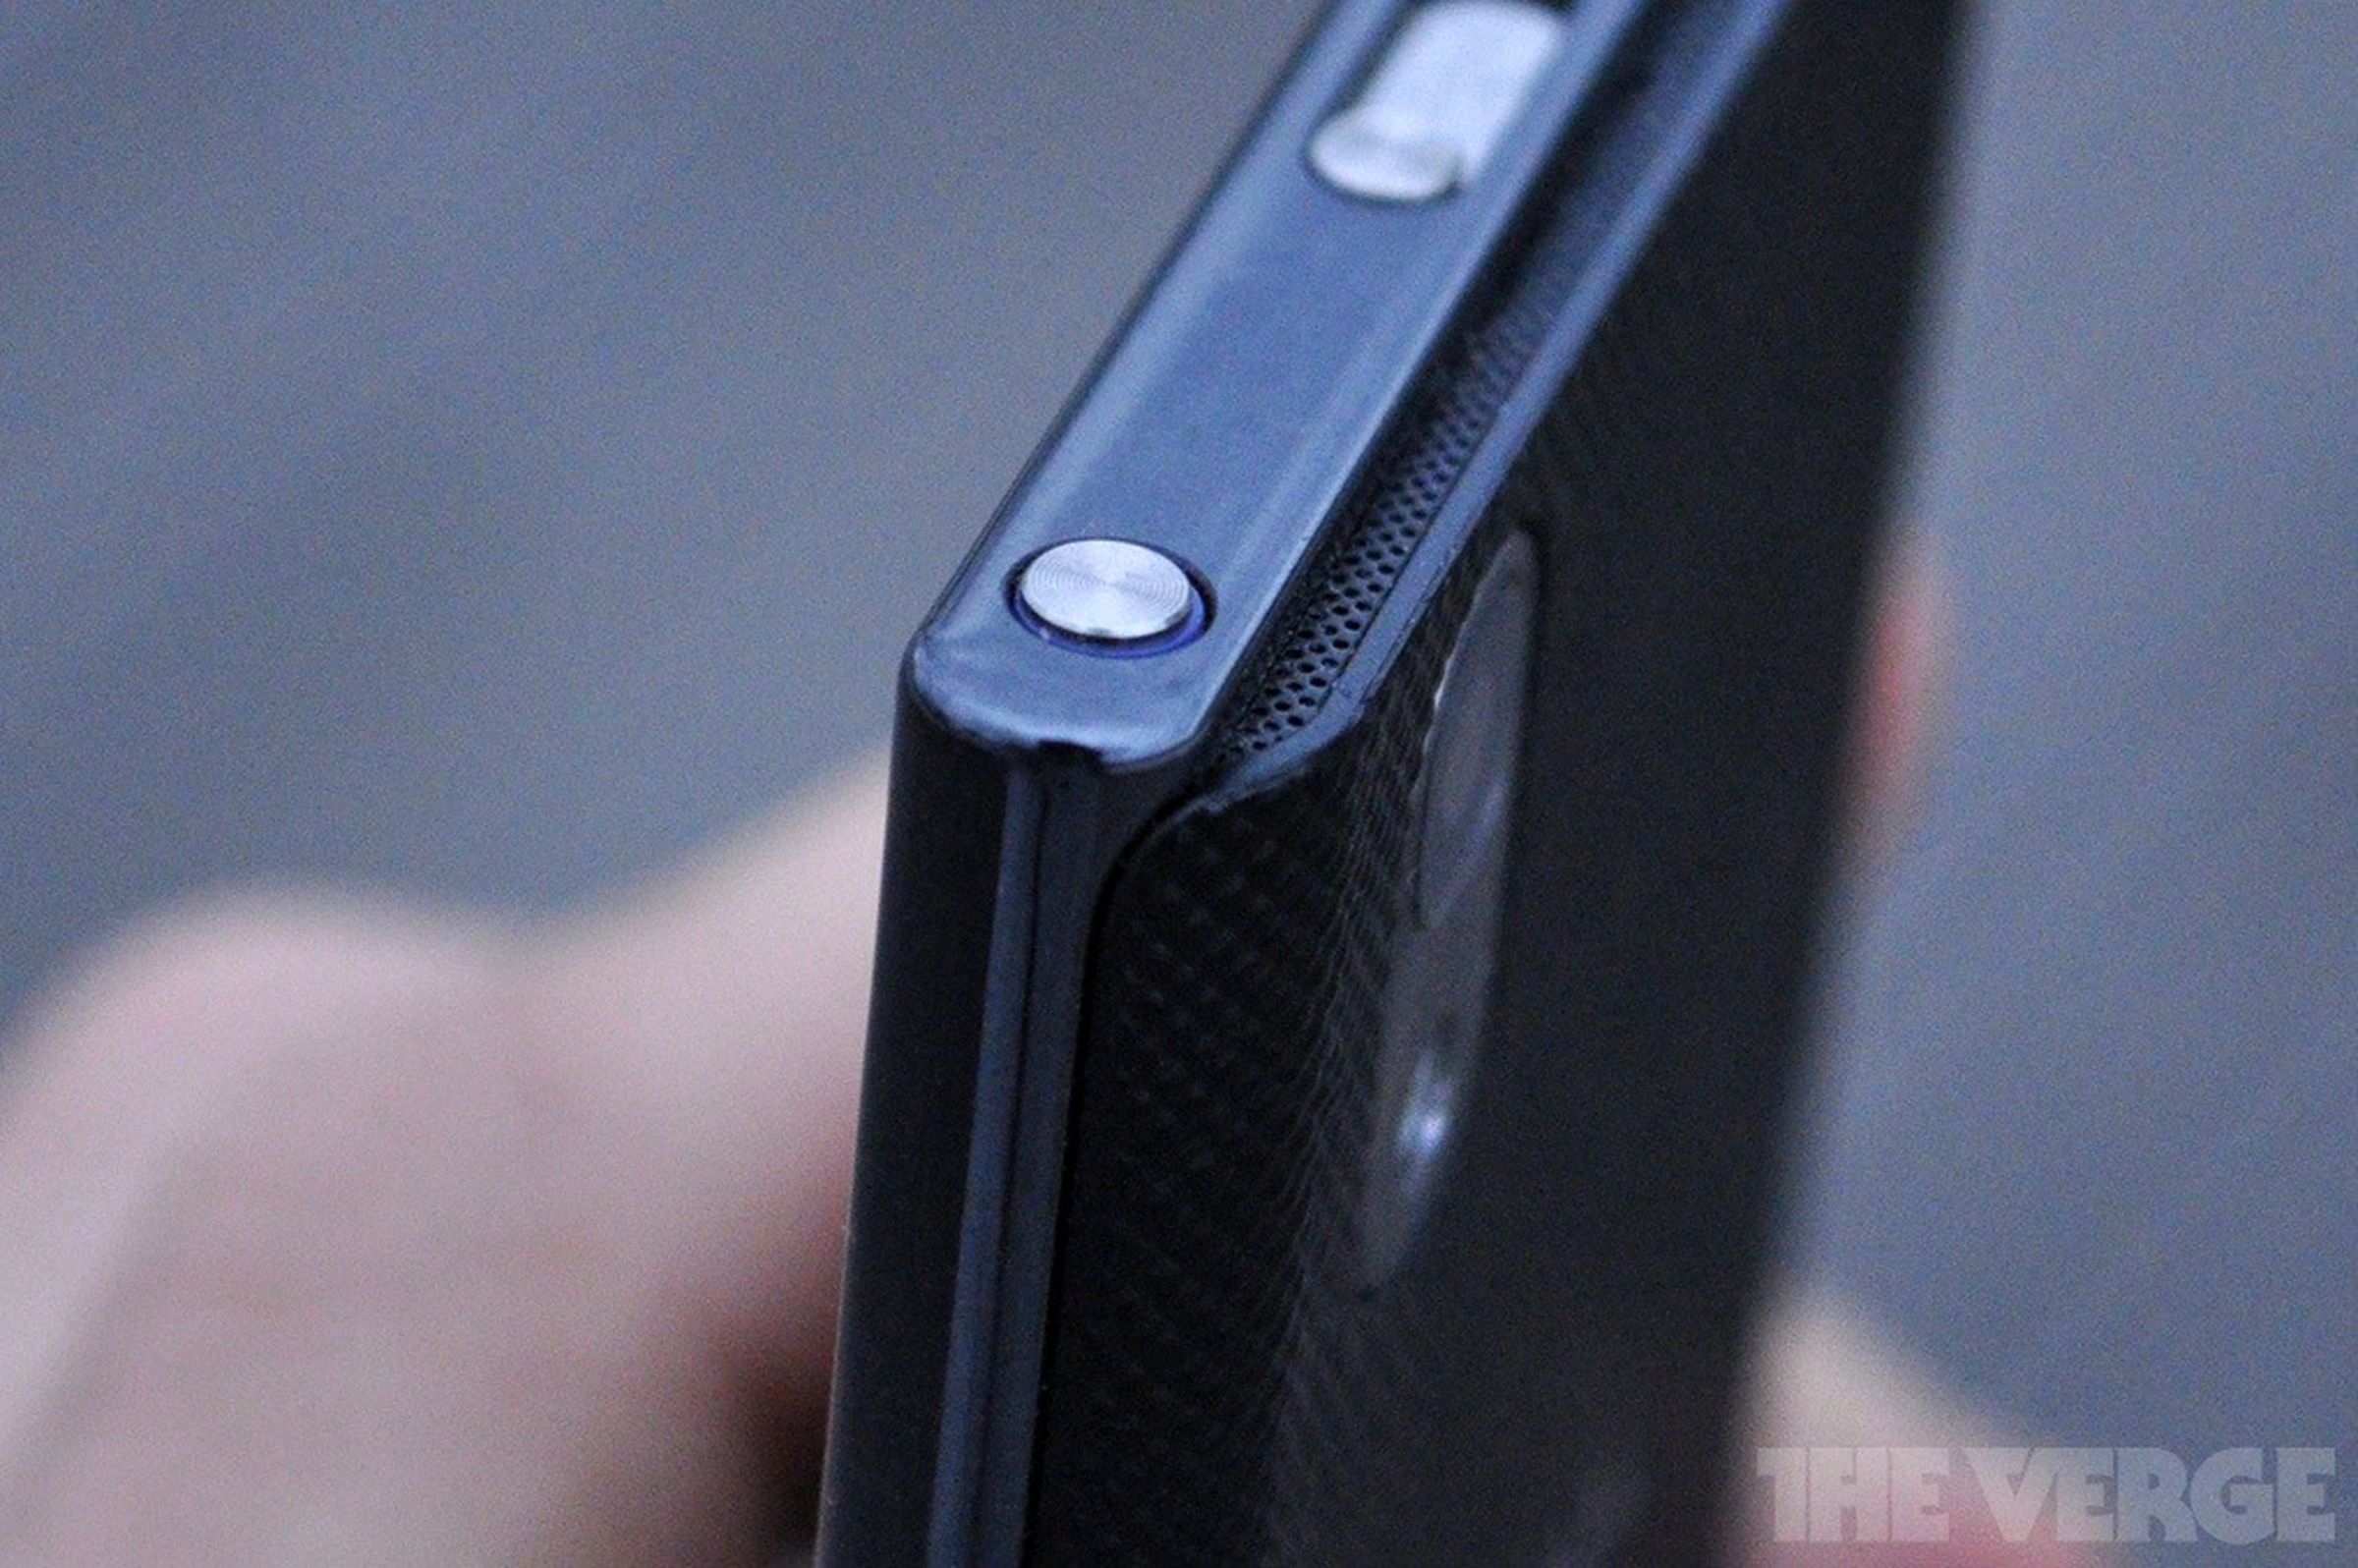 LG Prada Phone 3.0 review pictures